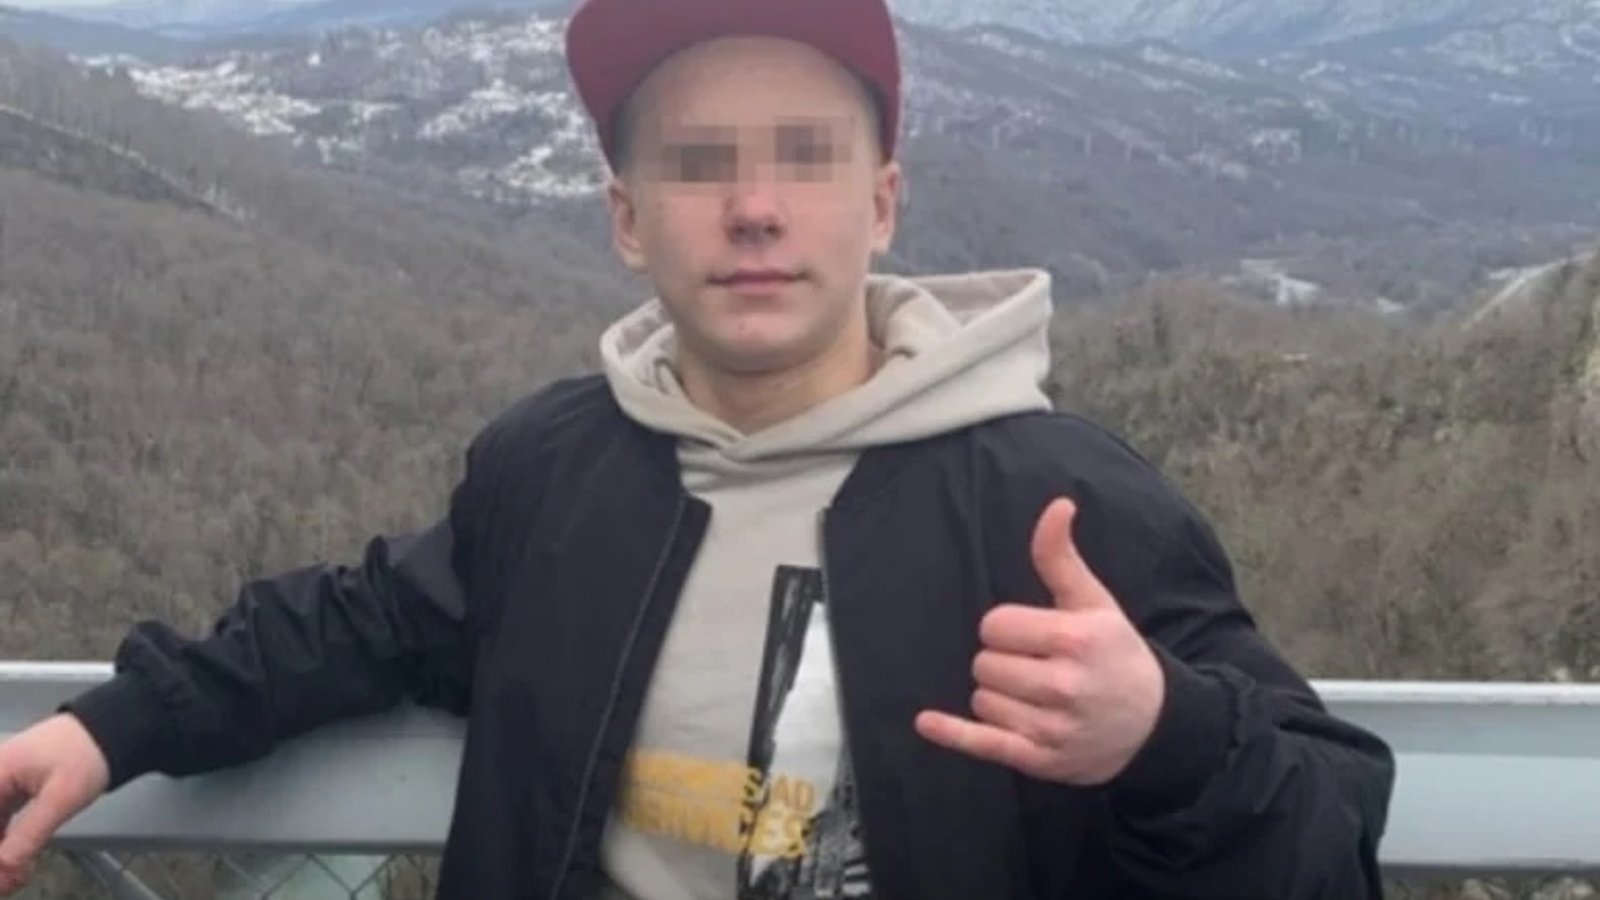 Un jeune joueur de 14 ans perd tragiquement la vie lors d'un match en Russie